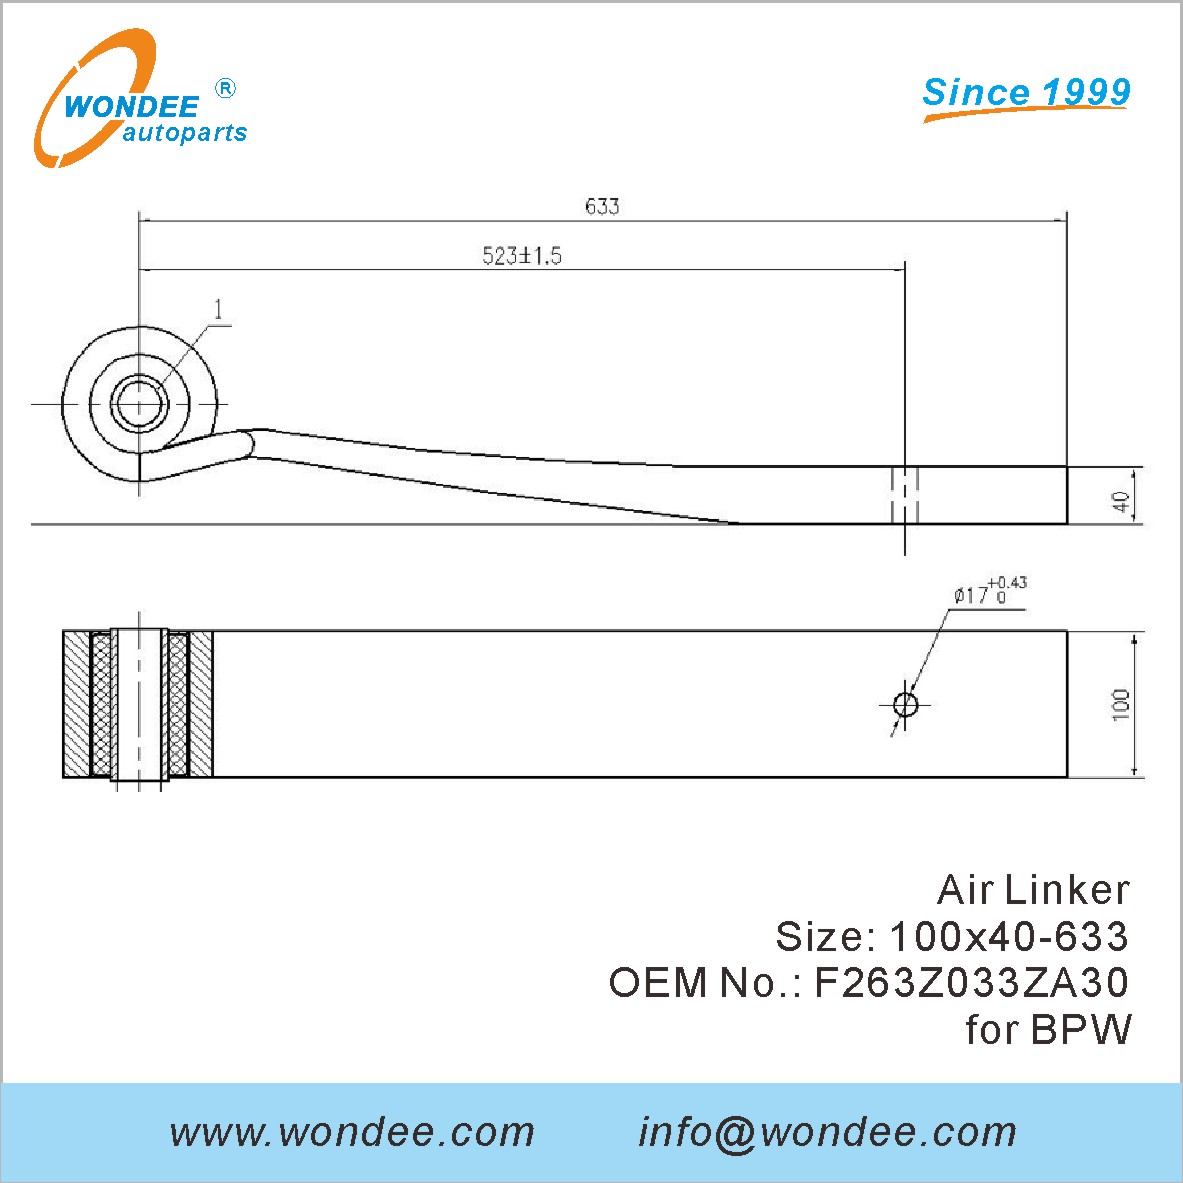 WONDEE Autoparts Air Linker OEM F263Z033ZA30 for BPW